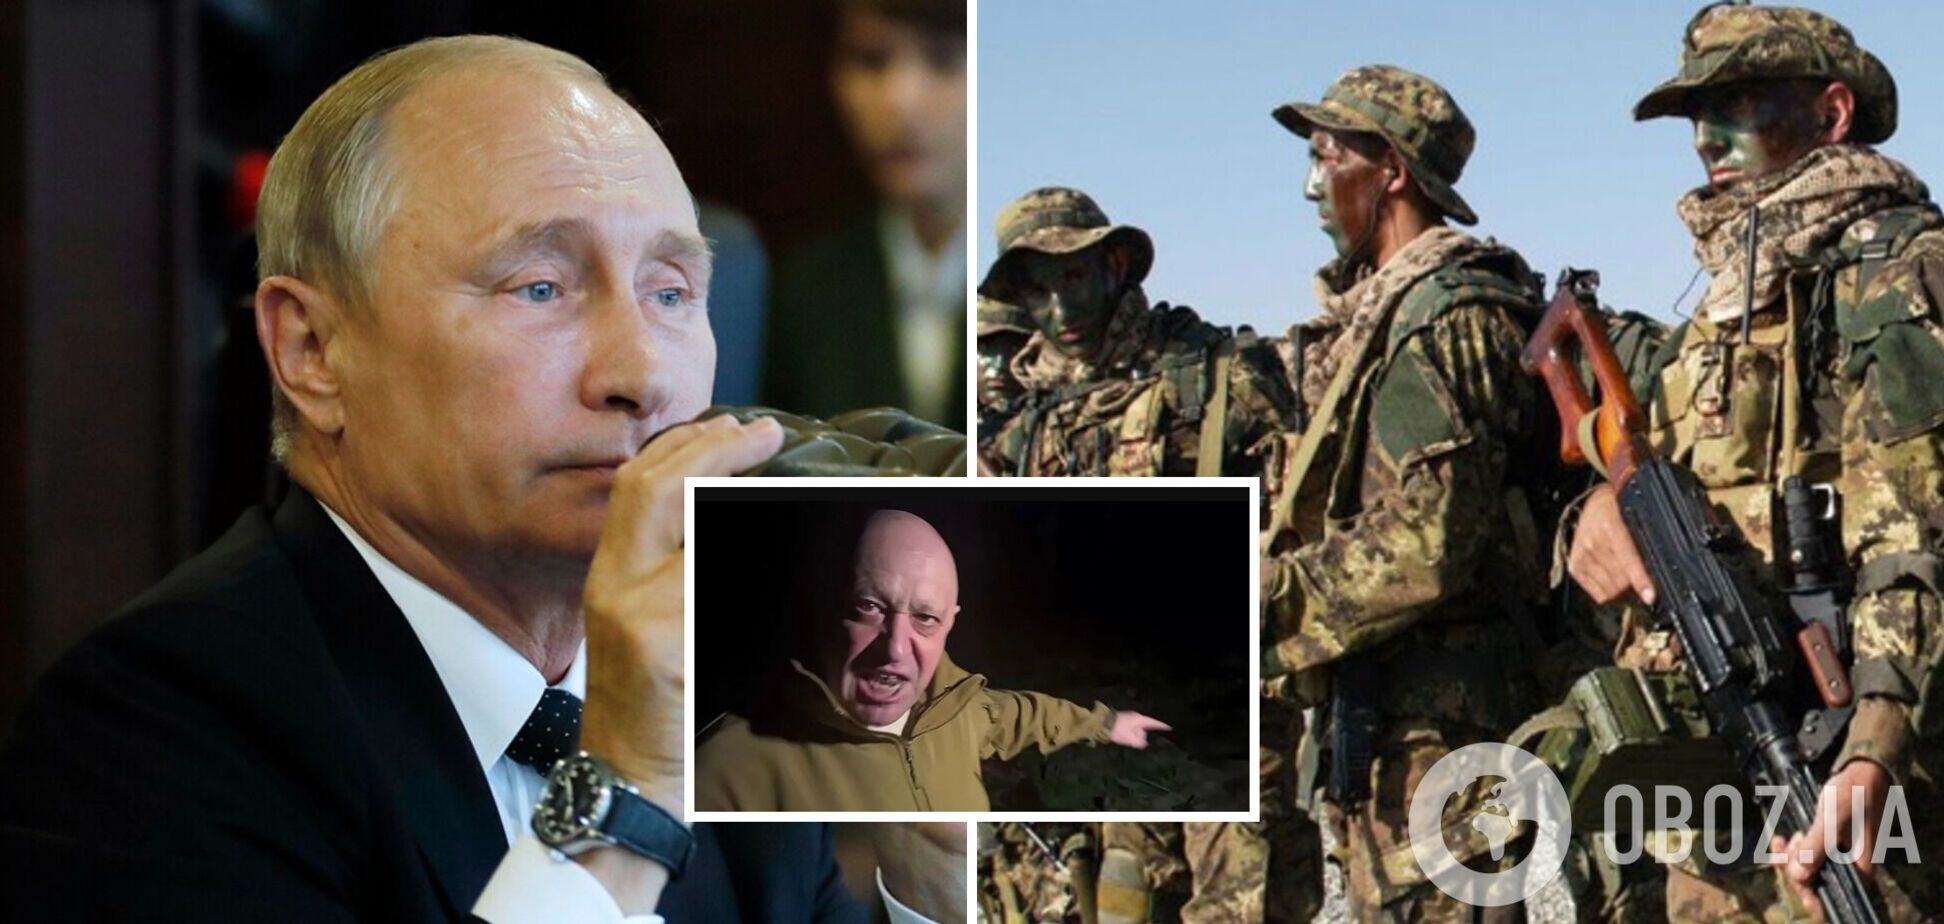 Генерал Маломуж: башни Кремля начали работать против Путина. Интервью об итогах 'госпереворота' Пригожина